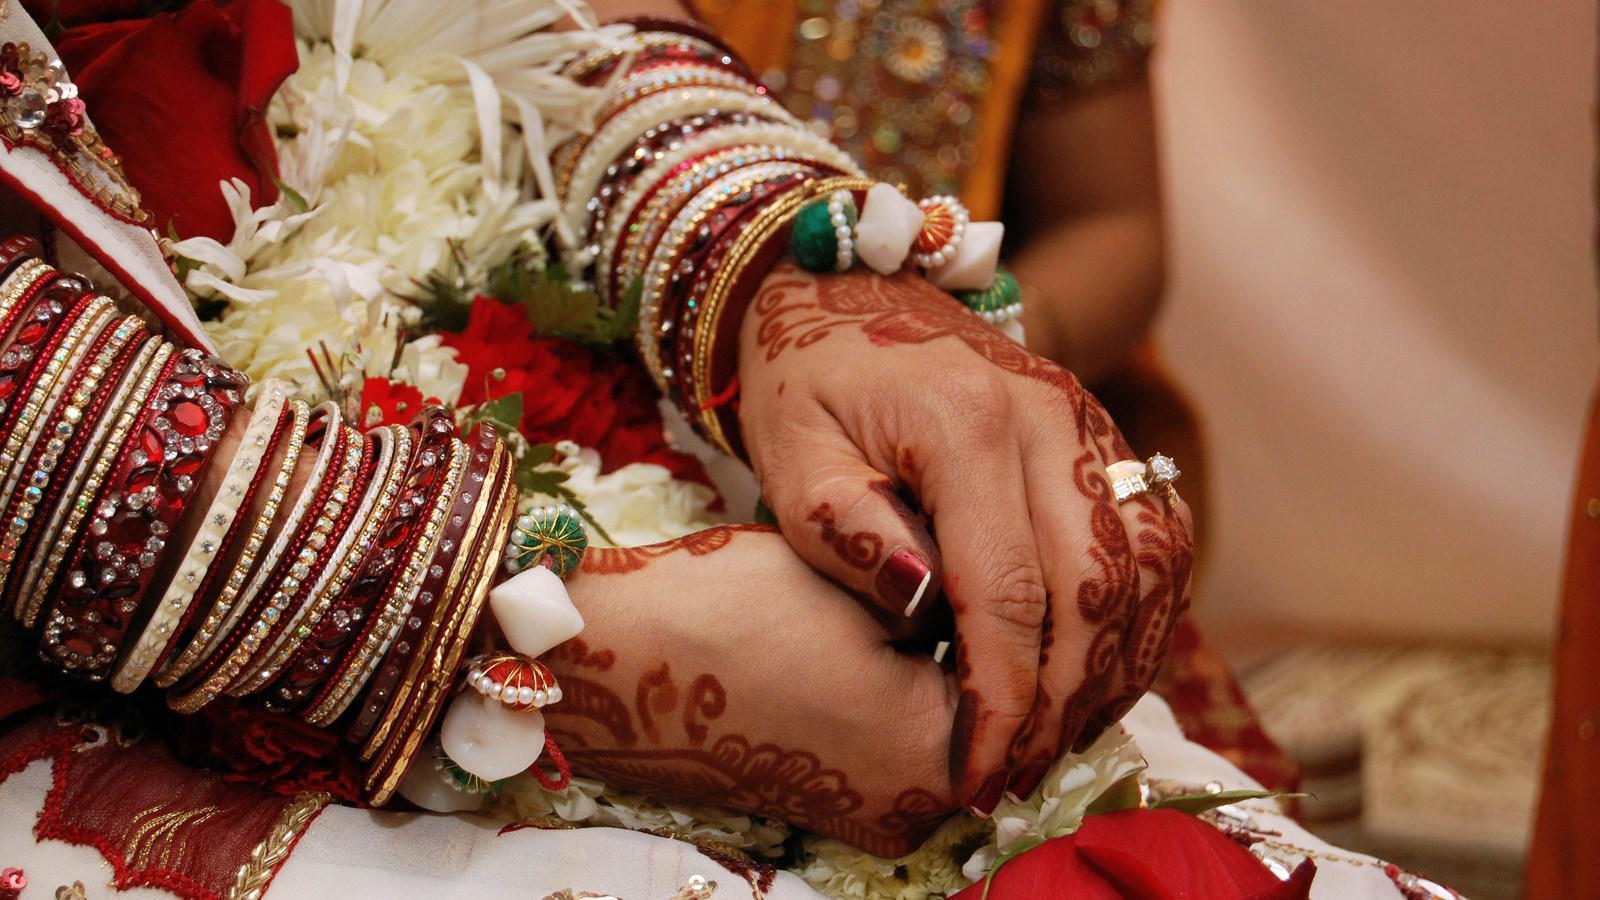 Indian Wedding graphy HD desktop wallpaper, Widescreen, High Definition